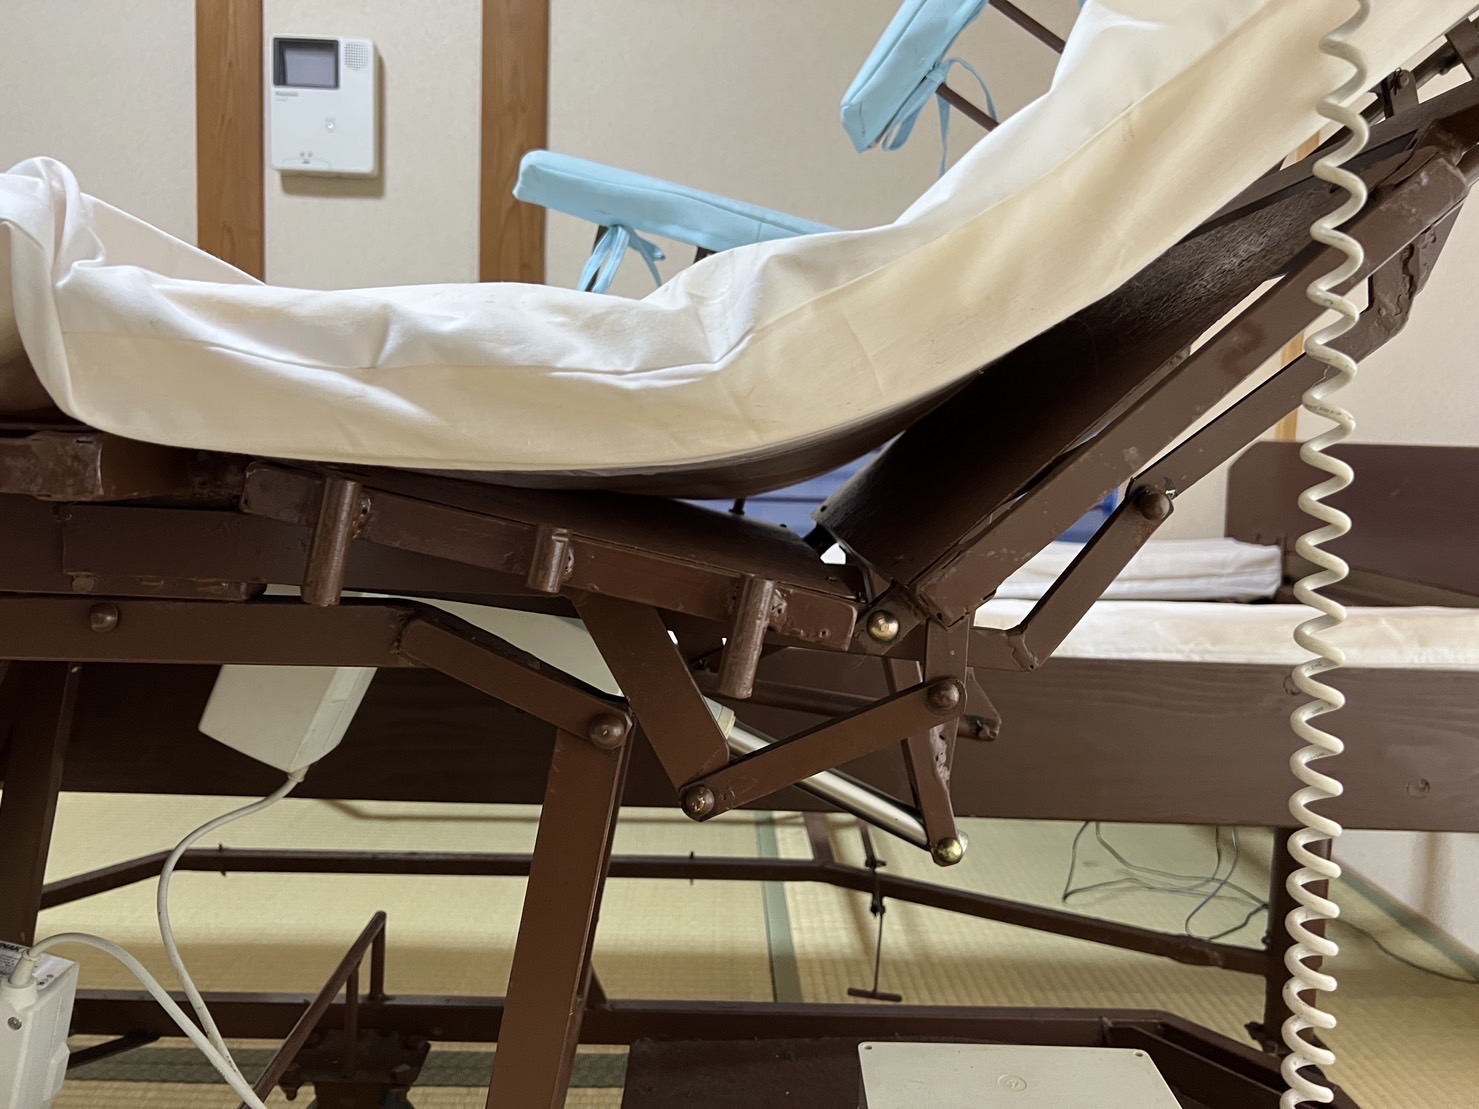 ベッド中央部が離脱する医療用介護ベッド「希望(のぞみ)」画像4